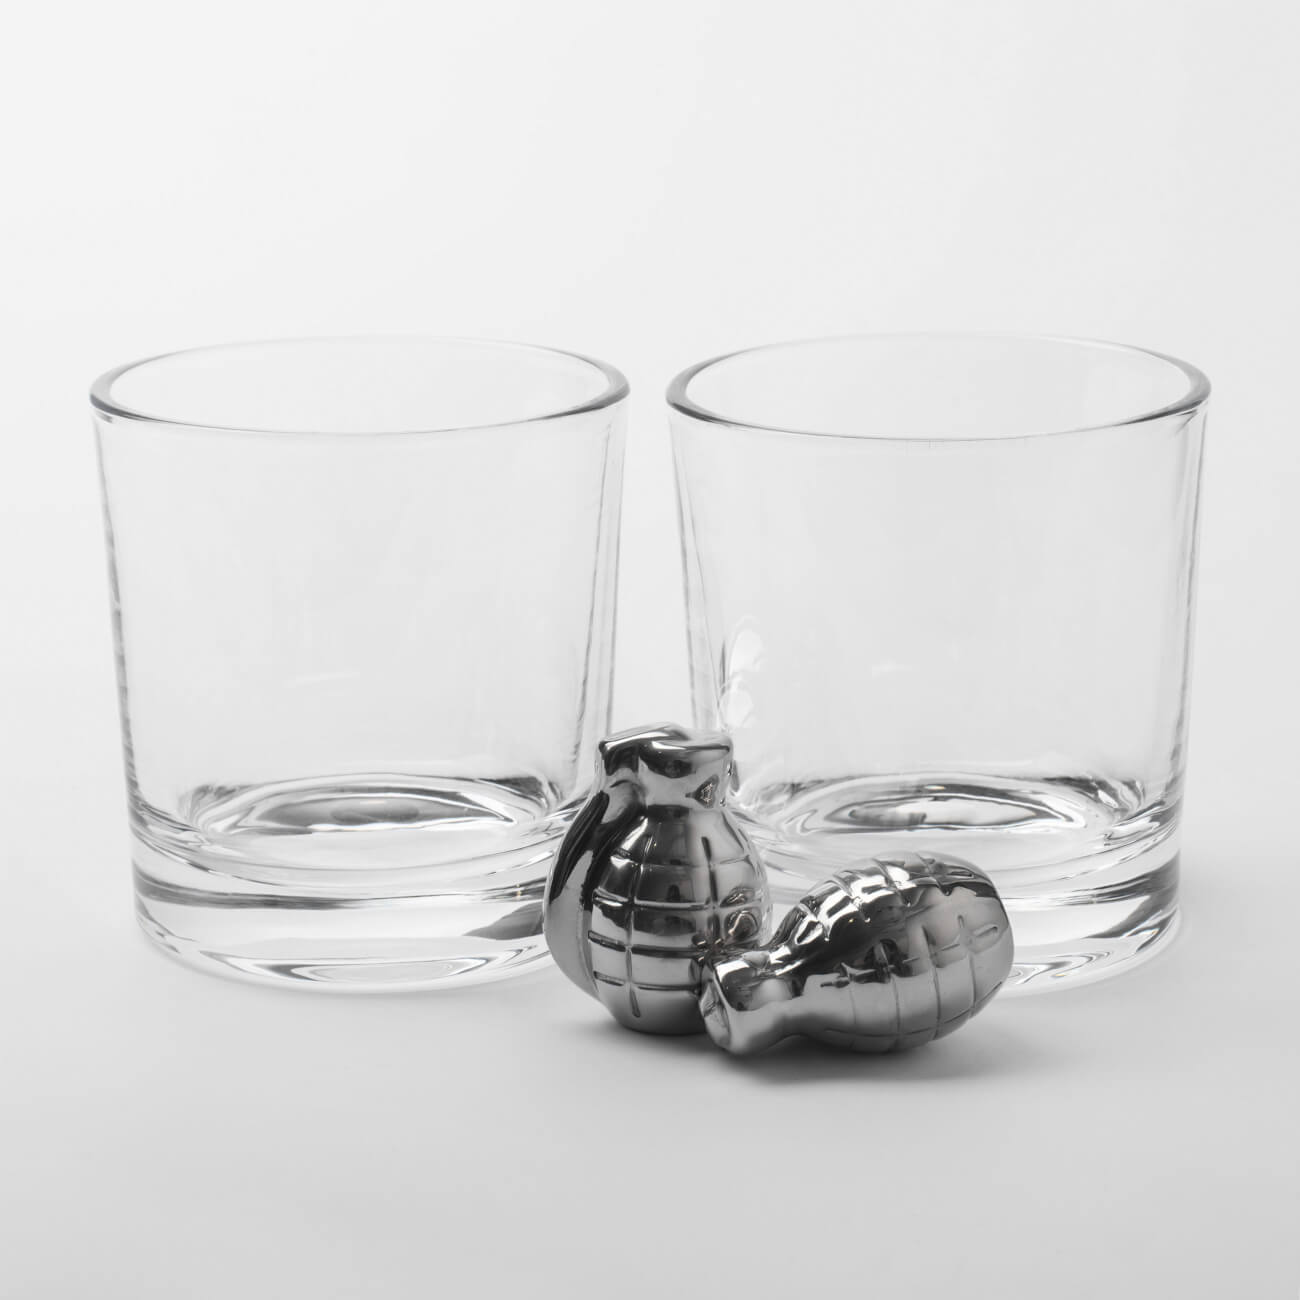 Набор для виски, 2 перс, 4 пр, стаканы/кубики, стекло/сталь, Граната, Bullet набор для виски 1 перс 4 пр стакан кубики стекло р гранит peak